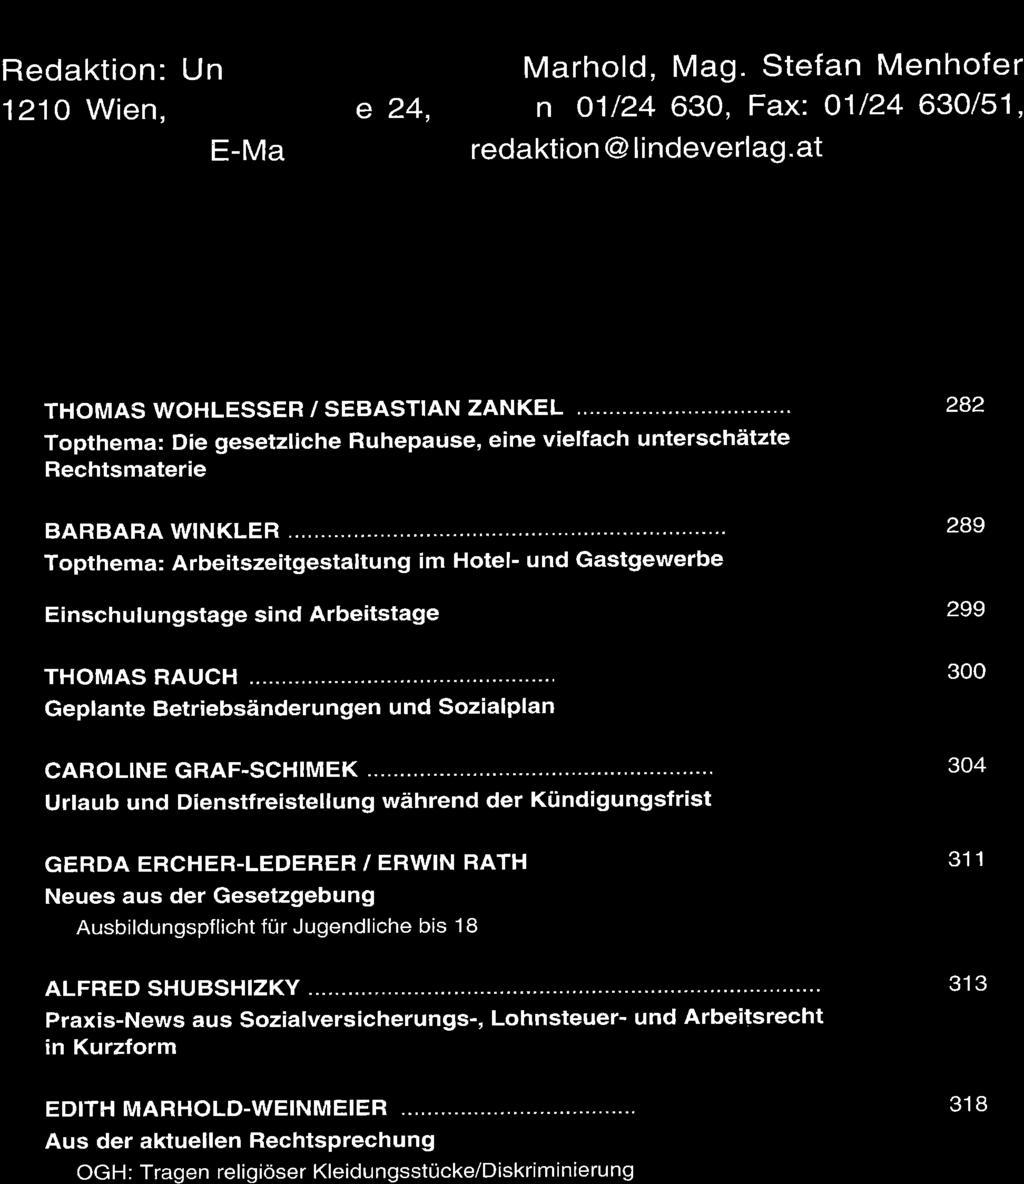 ARBEI Redaktion: Un 1210 Wien, 1 Þ.7 o - IALRECHTSKARTEI E-M a e 24, Marhold, Mag. Stefan Menhofer n 01/24 630, Fax: 01124 630/51, redaktion @ li ndeverlag.